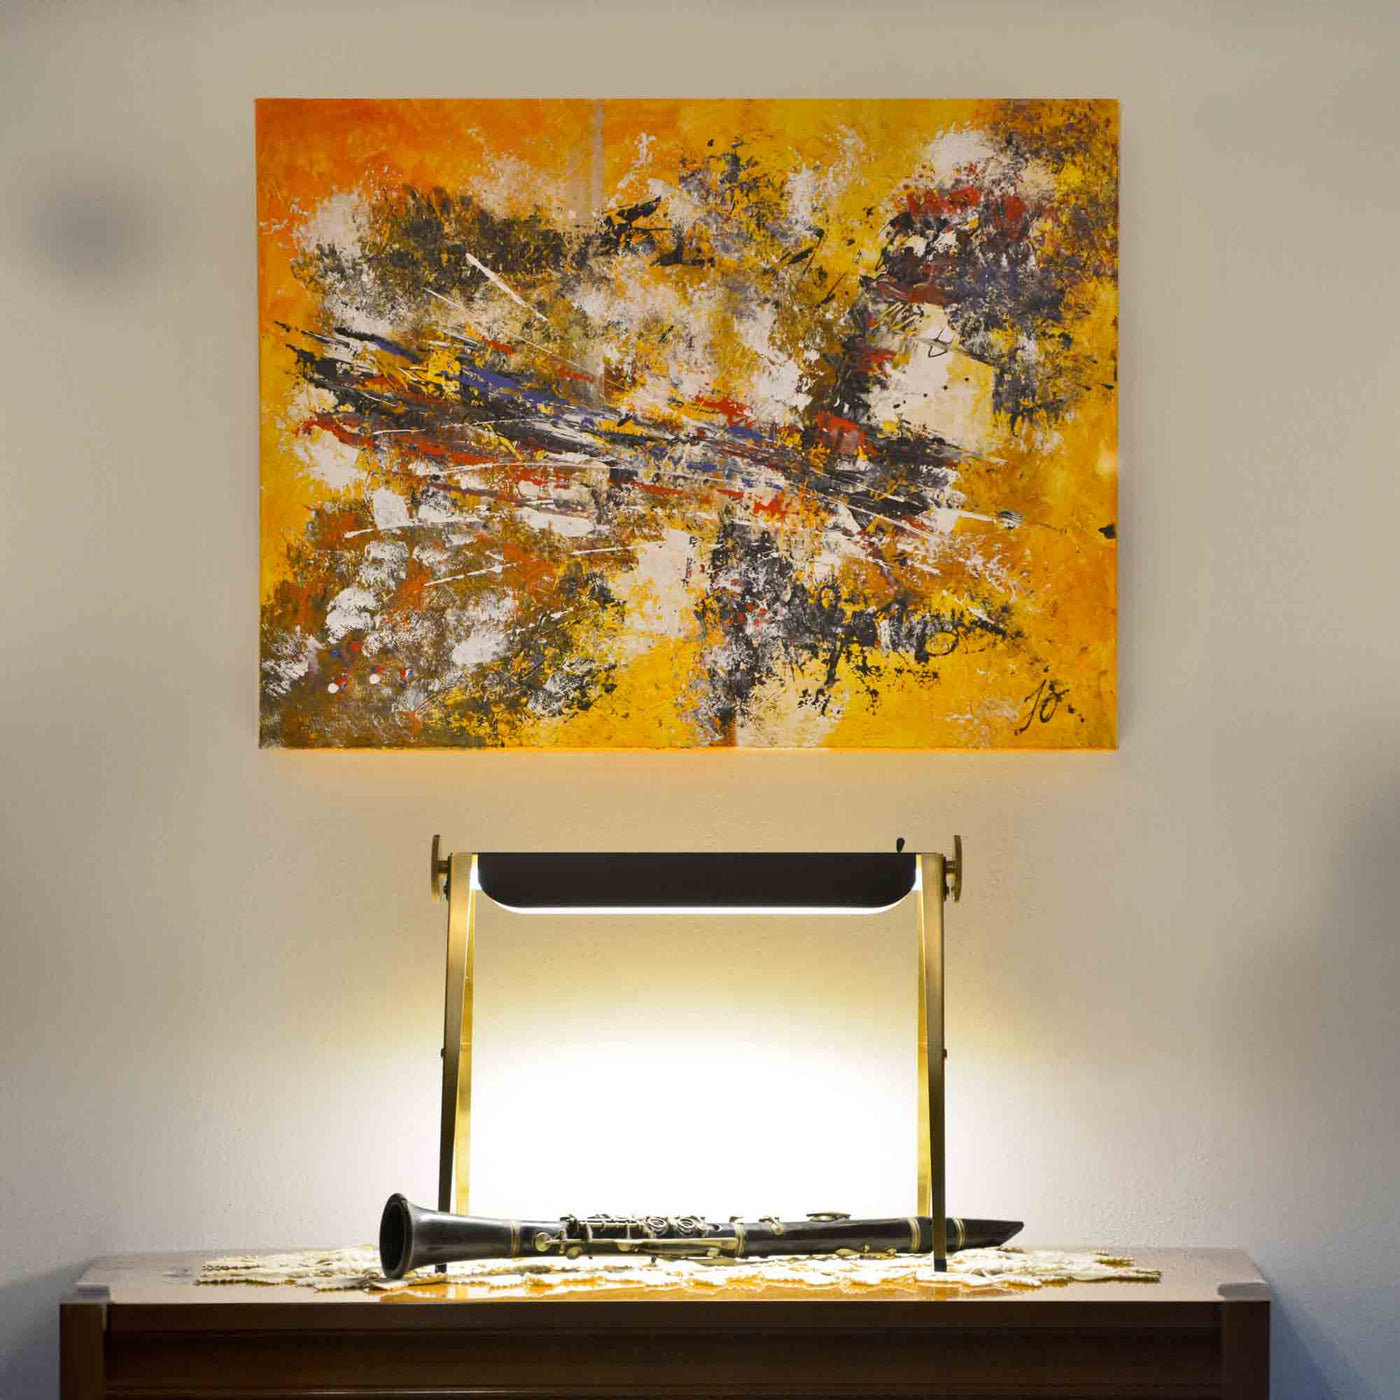 Brass Table Lamp CAVALLETTO by Hi.Project for Brillamenti 05